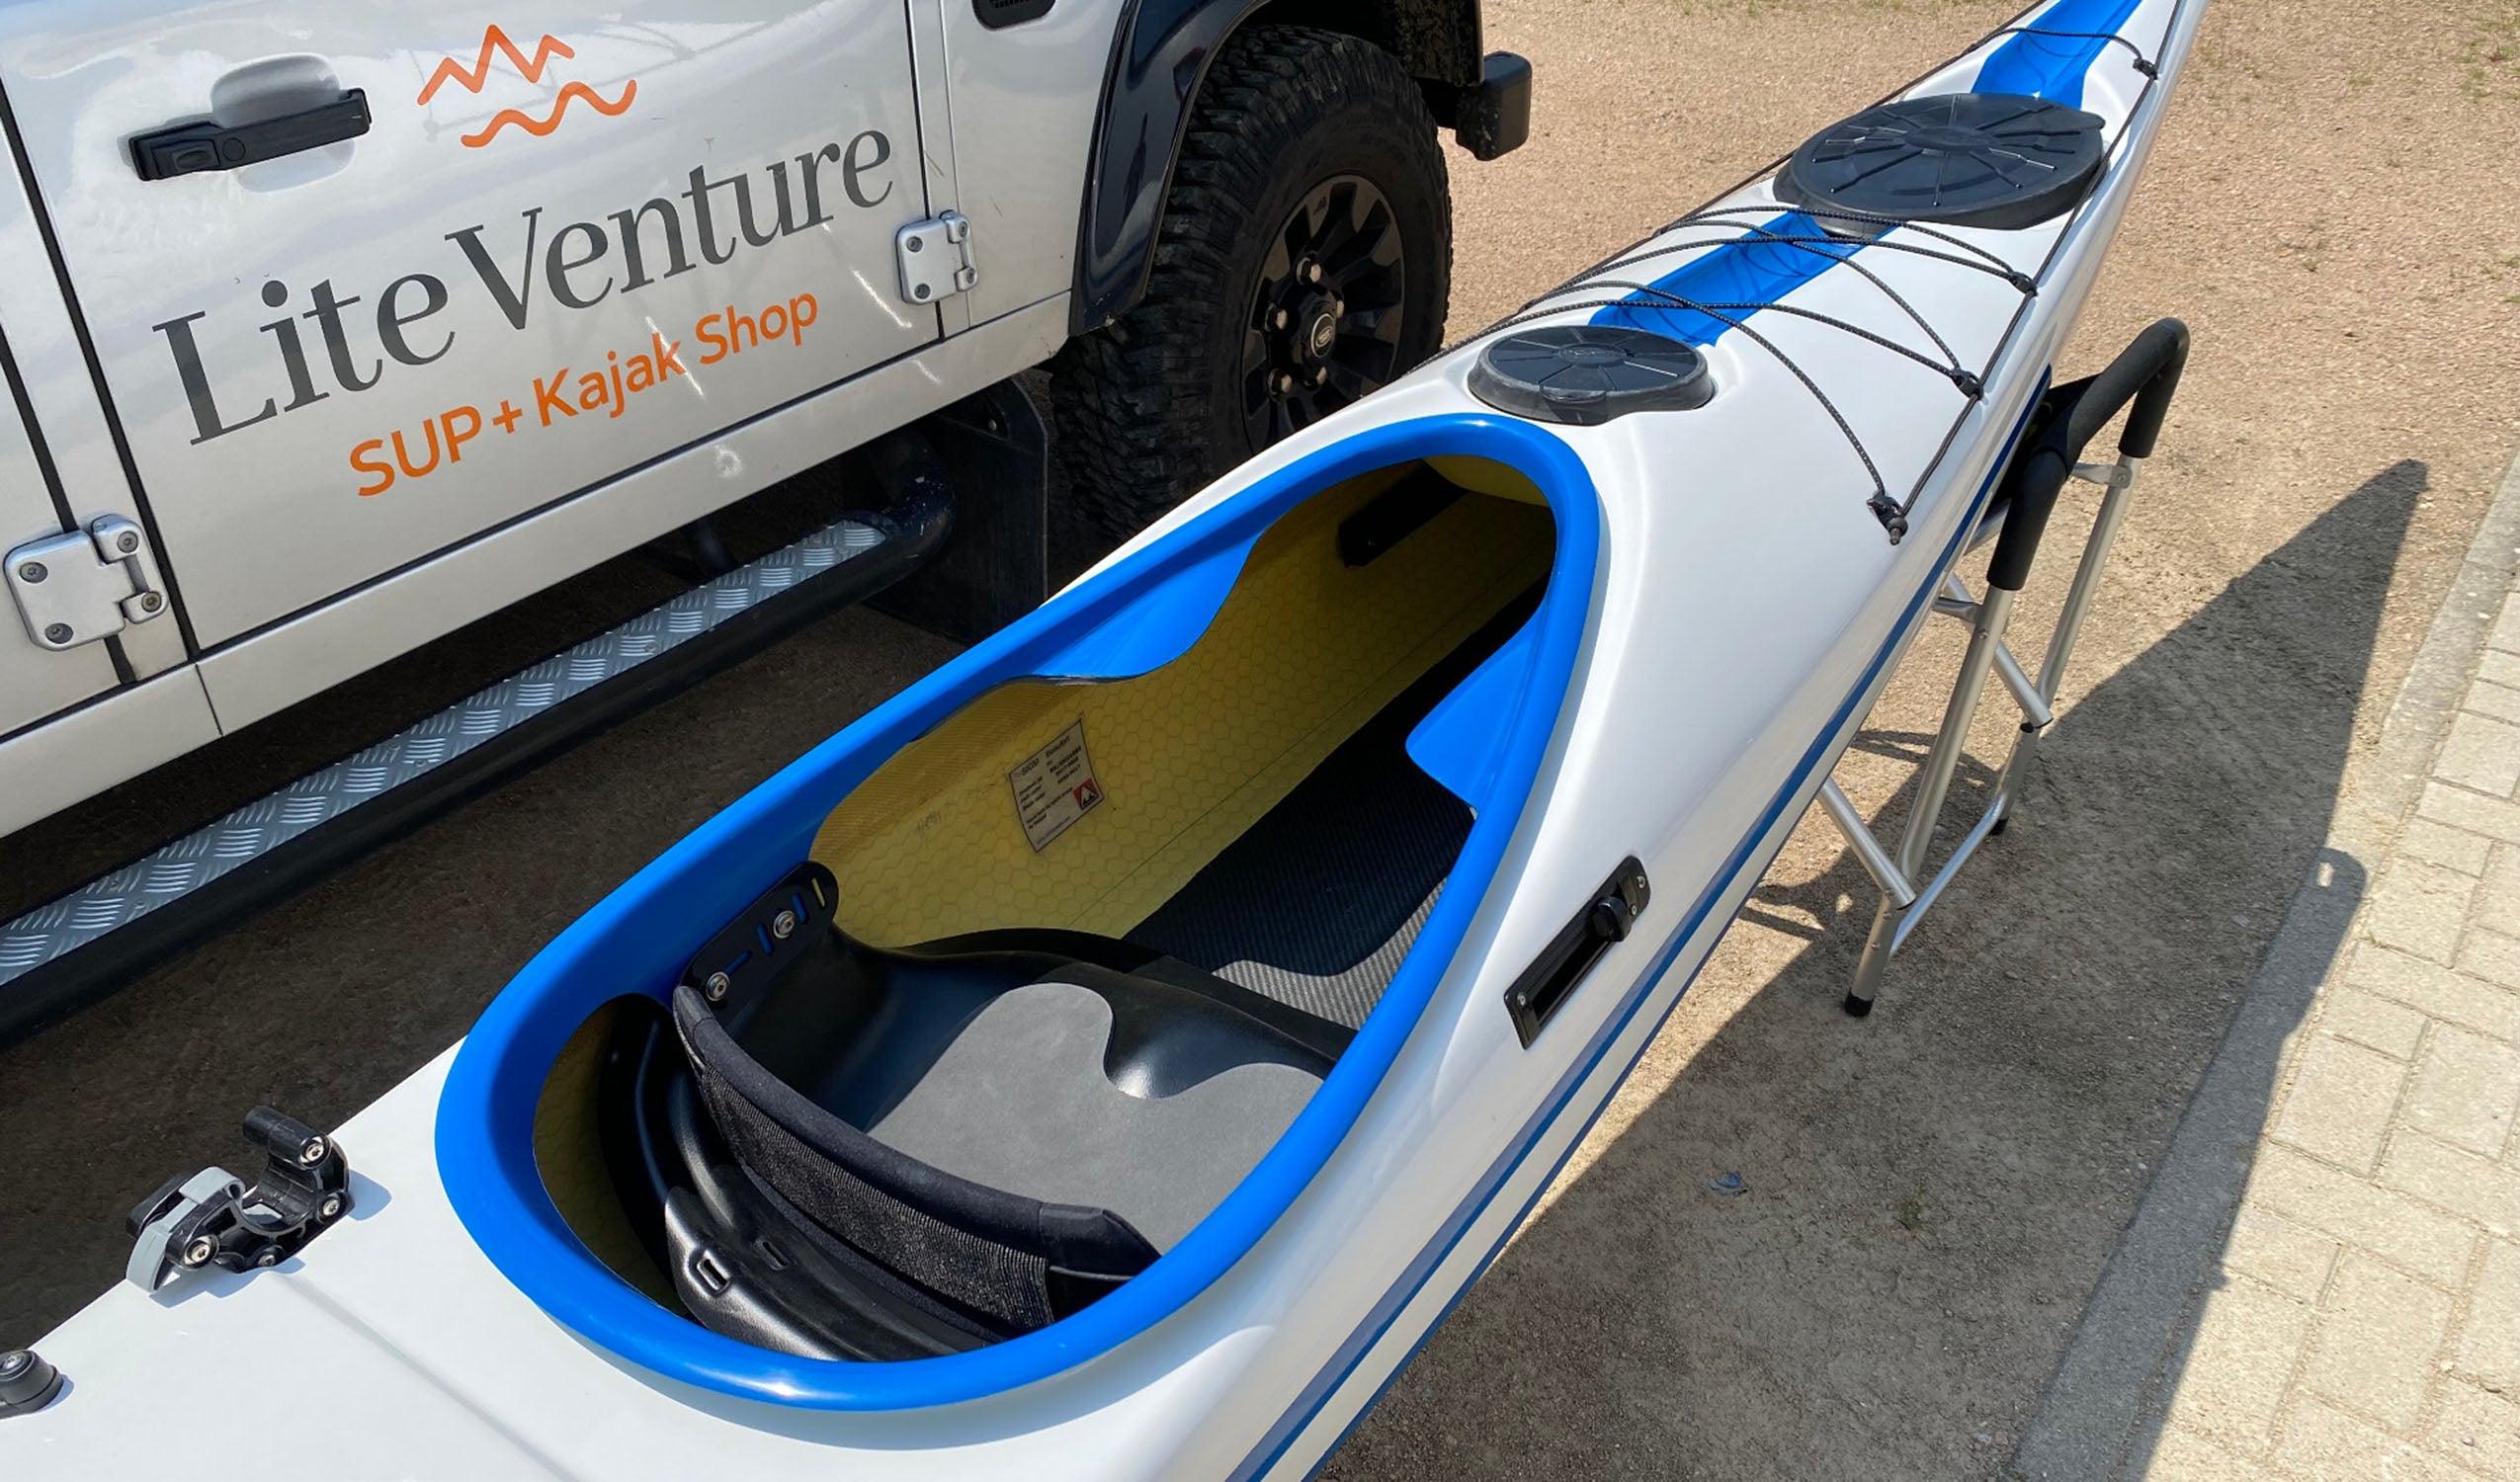 Produktbild von Kajak " Beaufort Rockhopper-weiß blau " der Marke SKIM Kayaks für 4350.00 €. Erhältlich online bei Lite Venture ( www.liteventure.de )